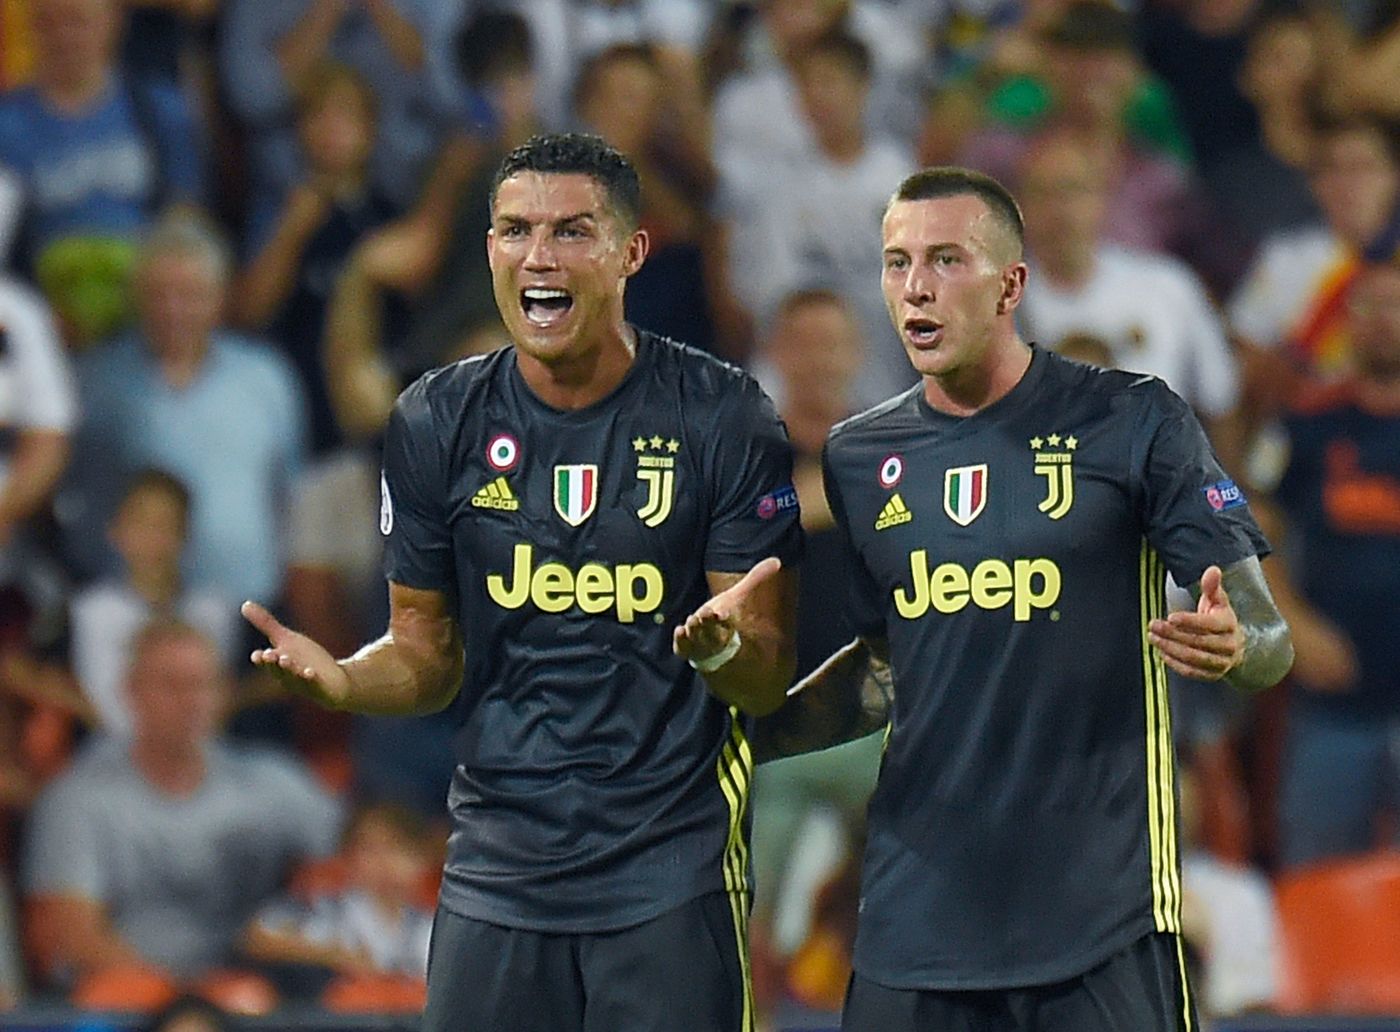 Serie A Frosinone-Juventus domenica 23 settembre: analisi e pronostico della quinta giornata della massima serie italiana.